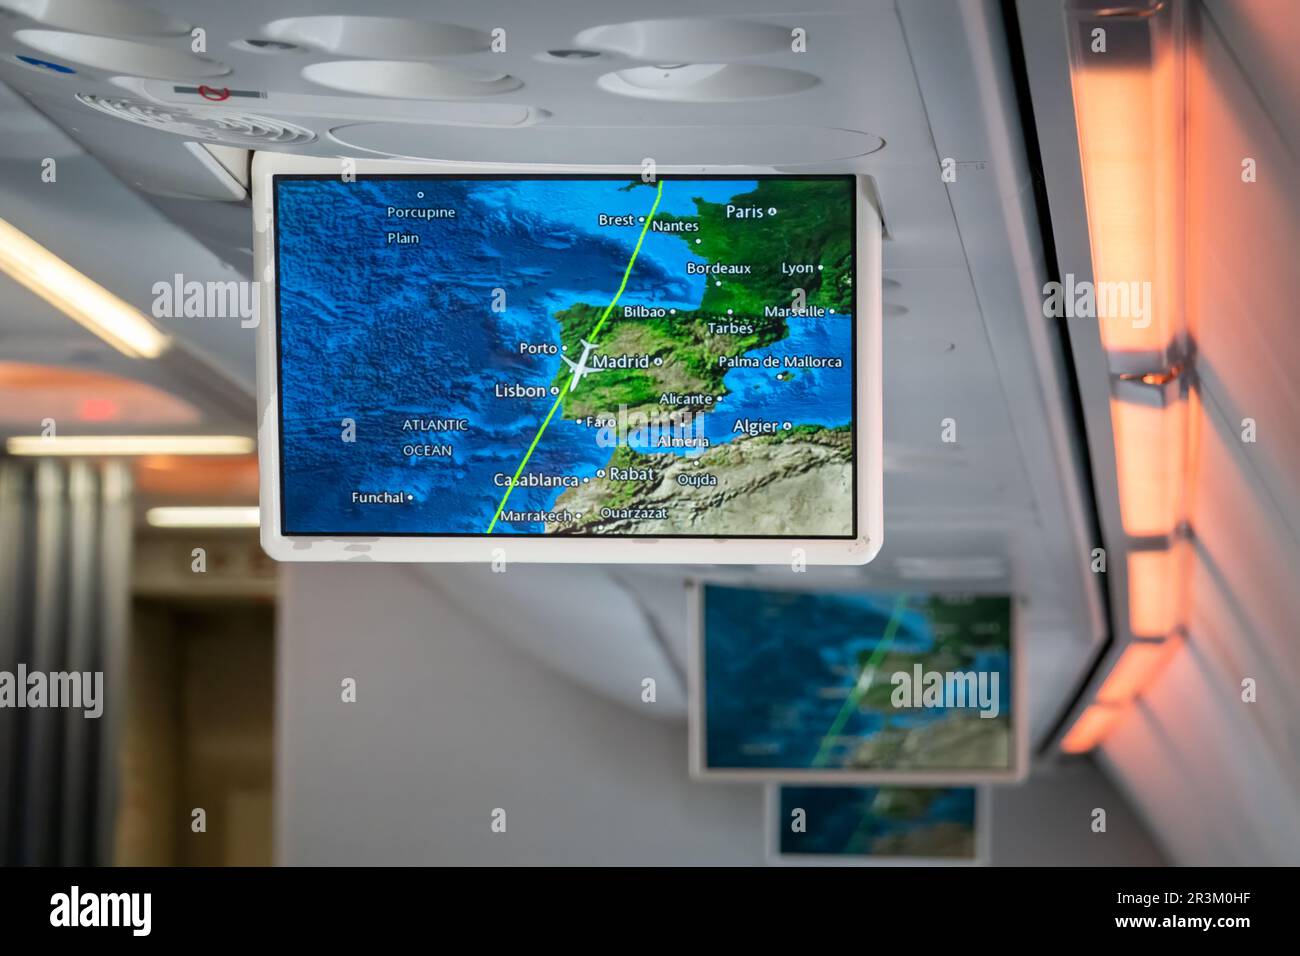 Una pantalla desplegable en la cabina de un avión de pasajeros muestra la información de vuelo de los pasajeros con la posición actual de los paneles que se muestra en un mapa Foto de stock